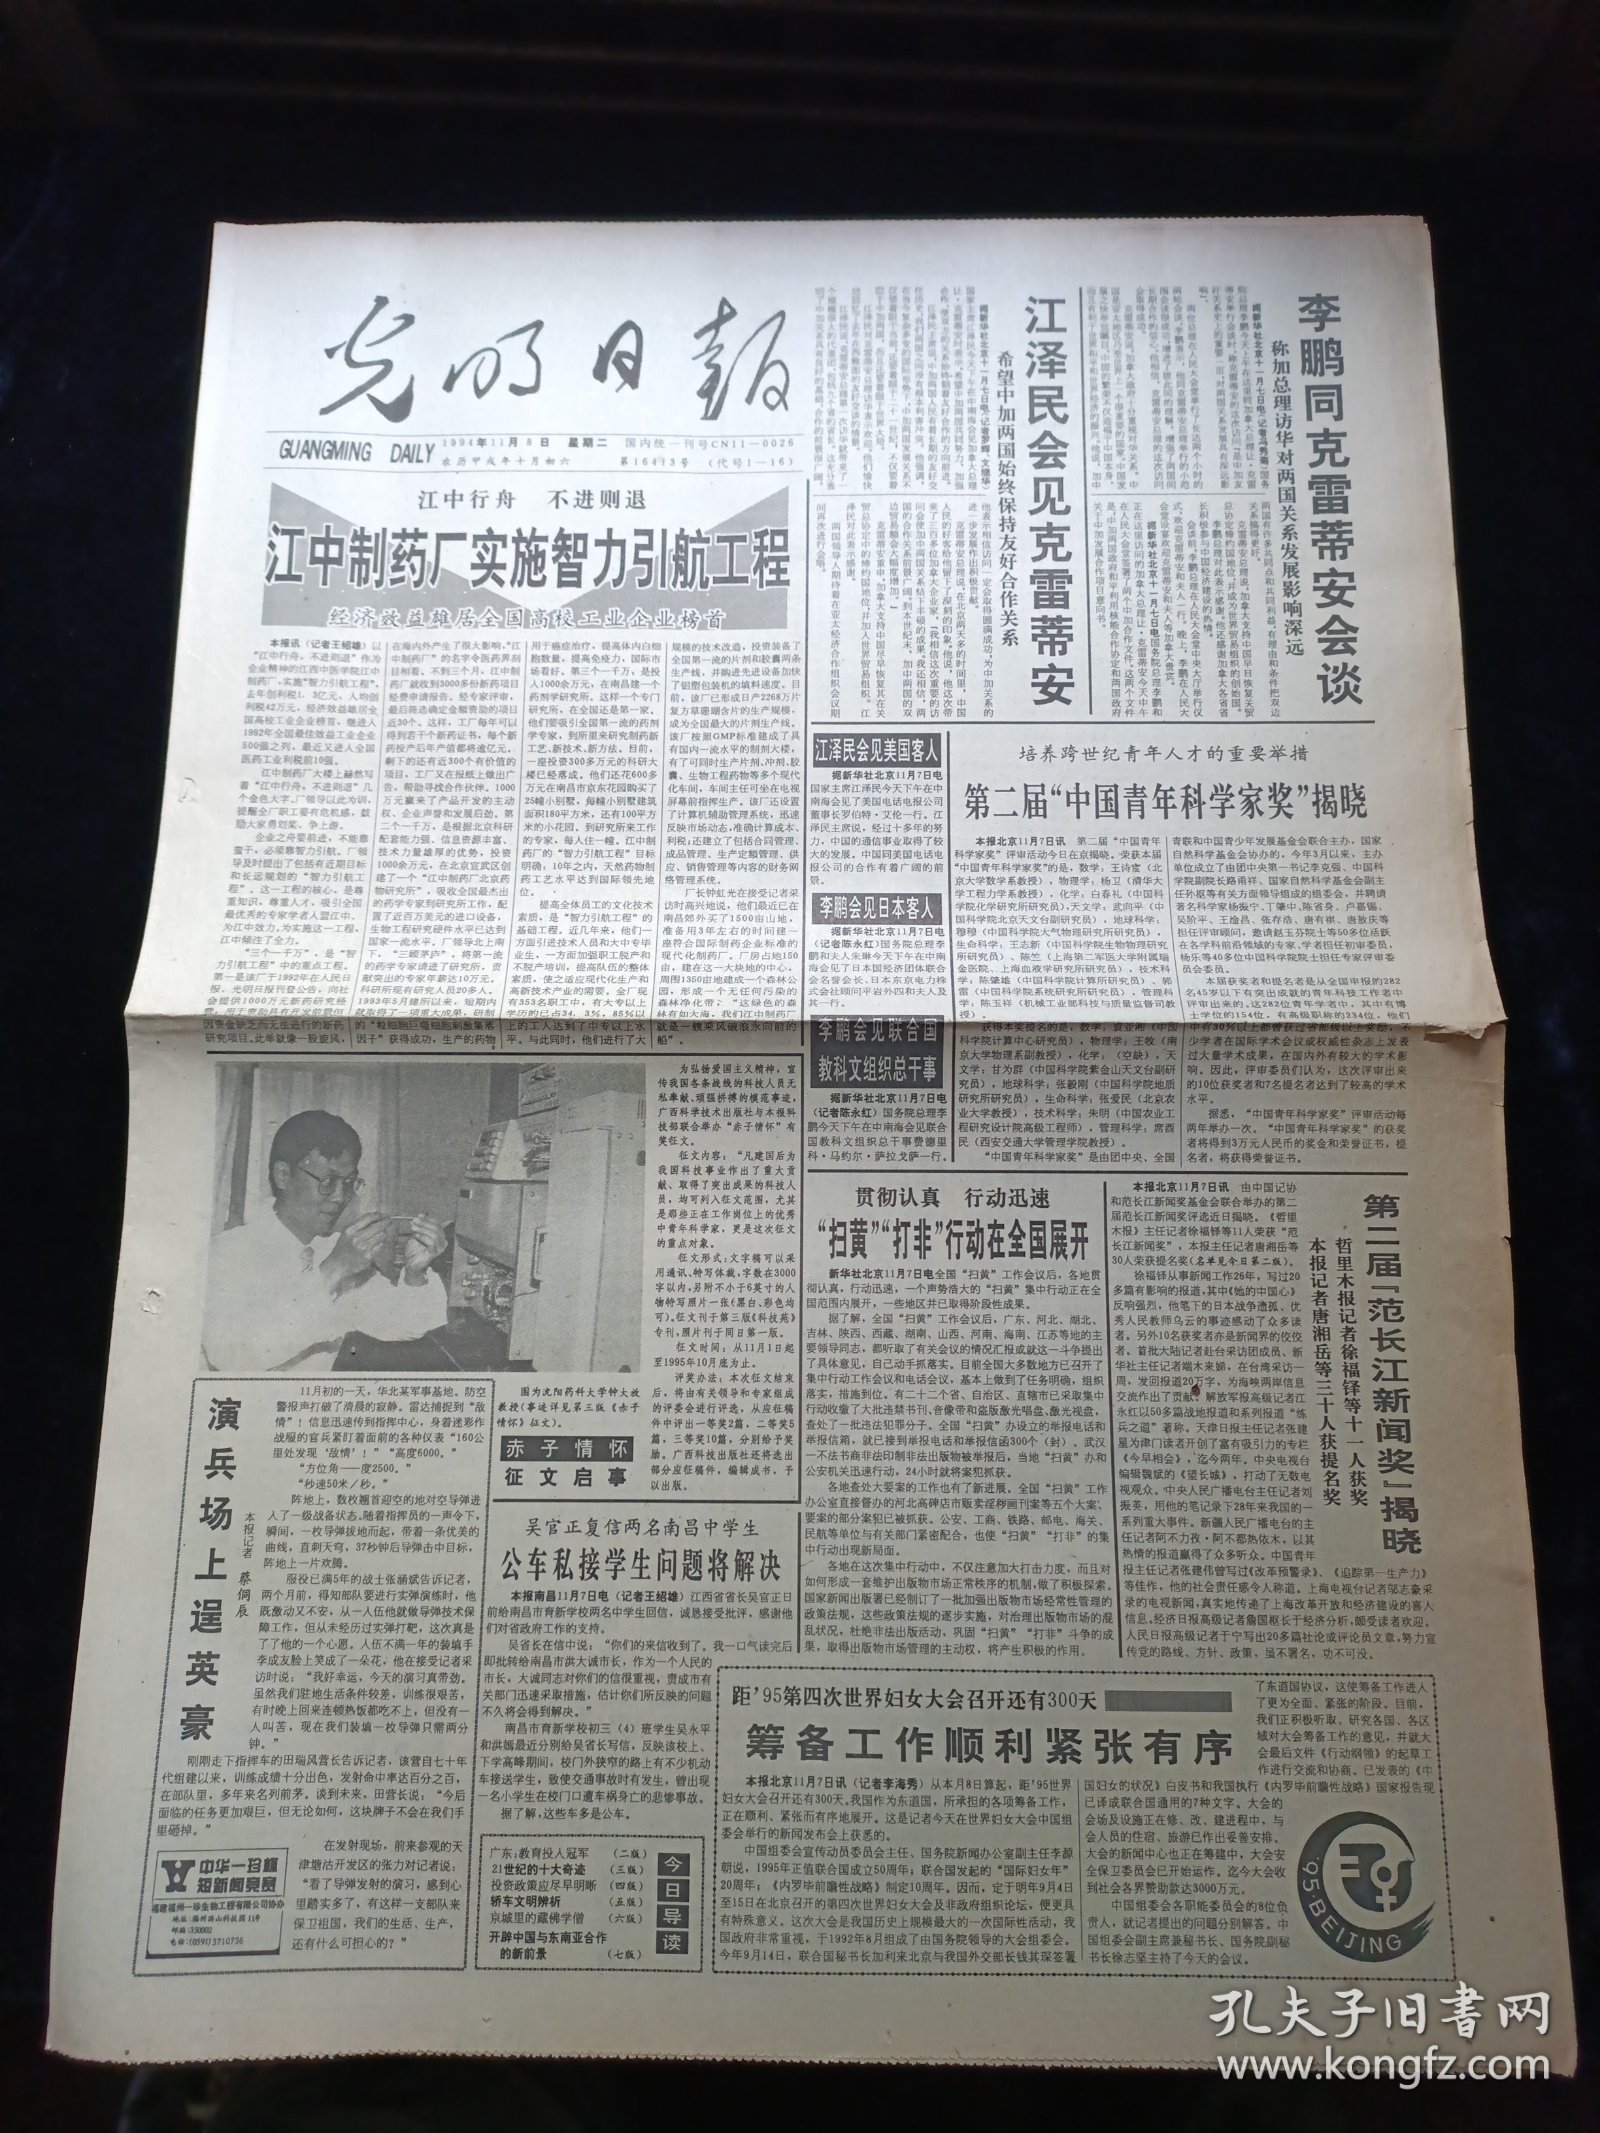 光明日报1994年11月8日，第二届中国青年科学家奖揭晓，第二届范长江新闻奖揭晓，21世纪的十大奇迹，二十世纪中国文学出版，妈祖信仰，对开8版生日报